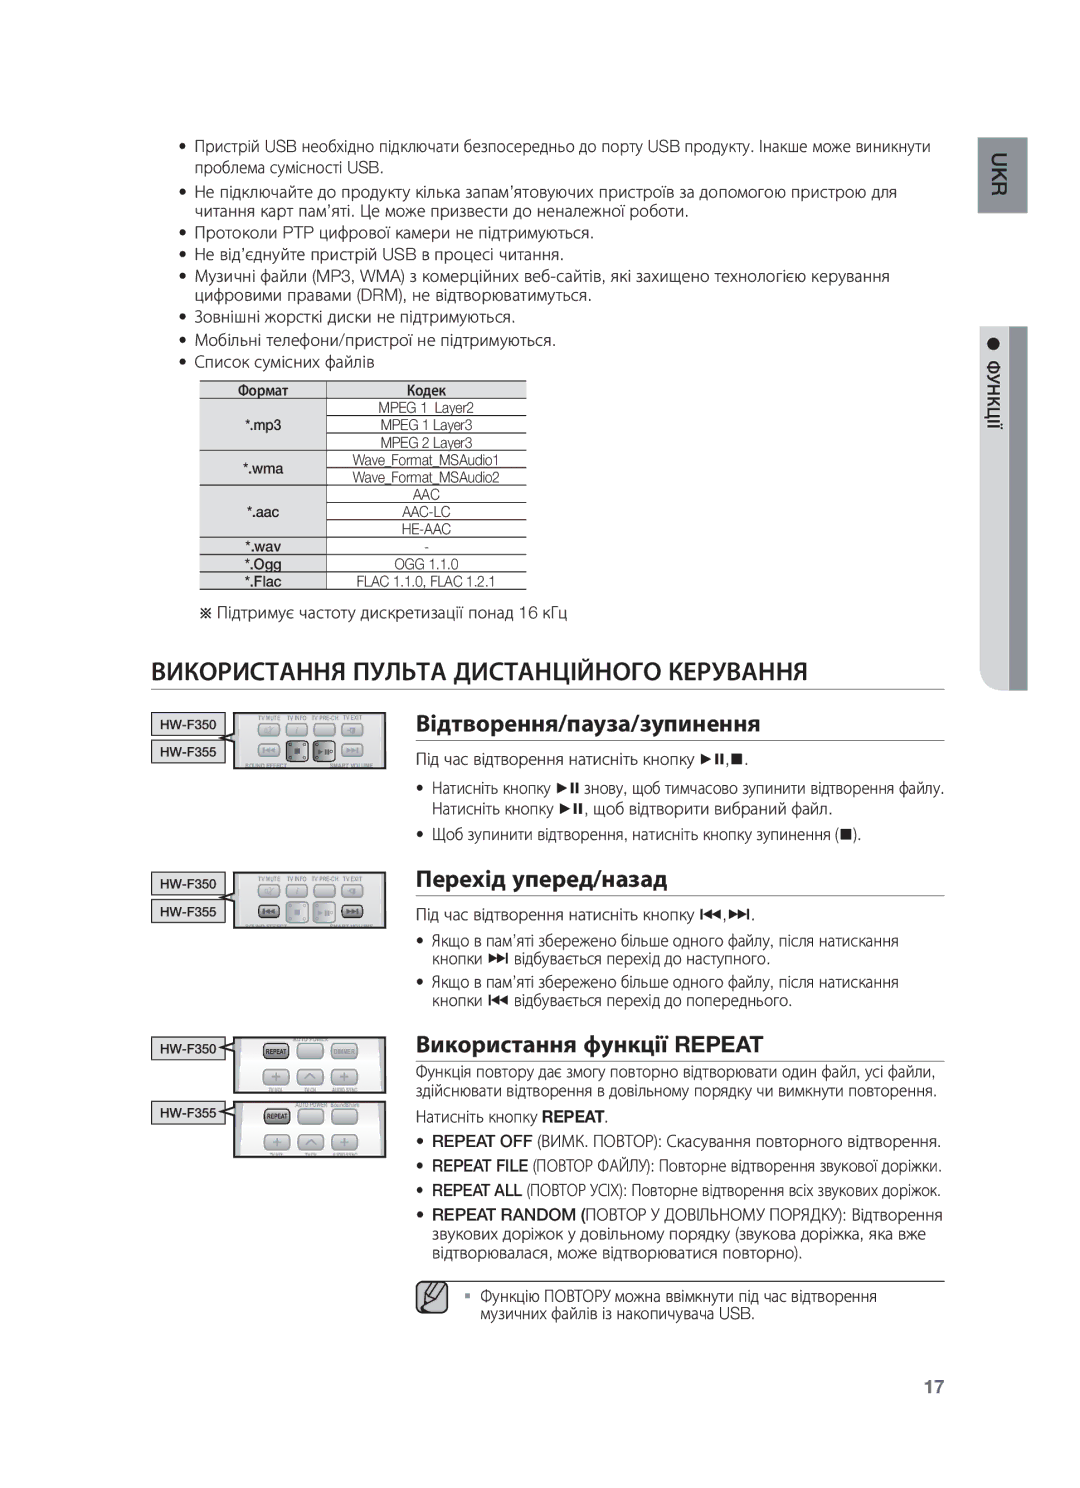 Samsung HW-F350/RU manual Використання Пульта Дистанційного Керування, Відтворення/пауза/зупинення, Перехід уперед/назад 